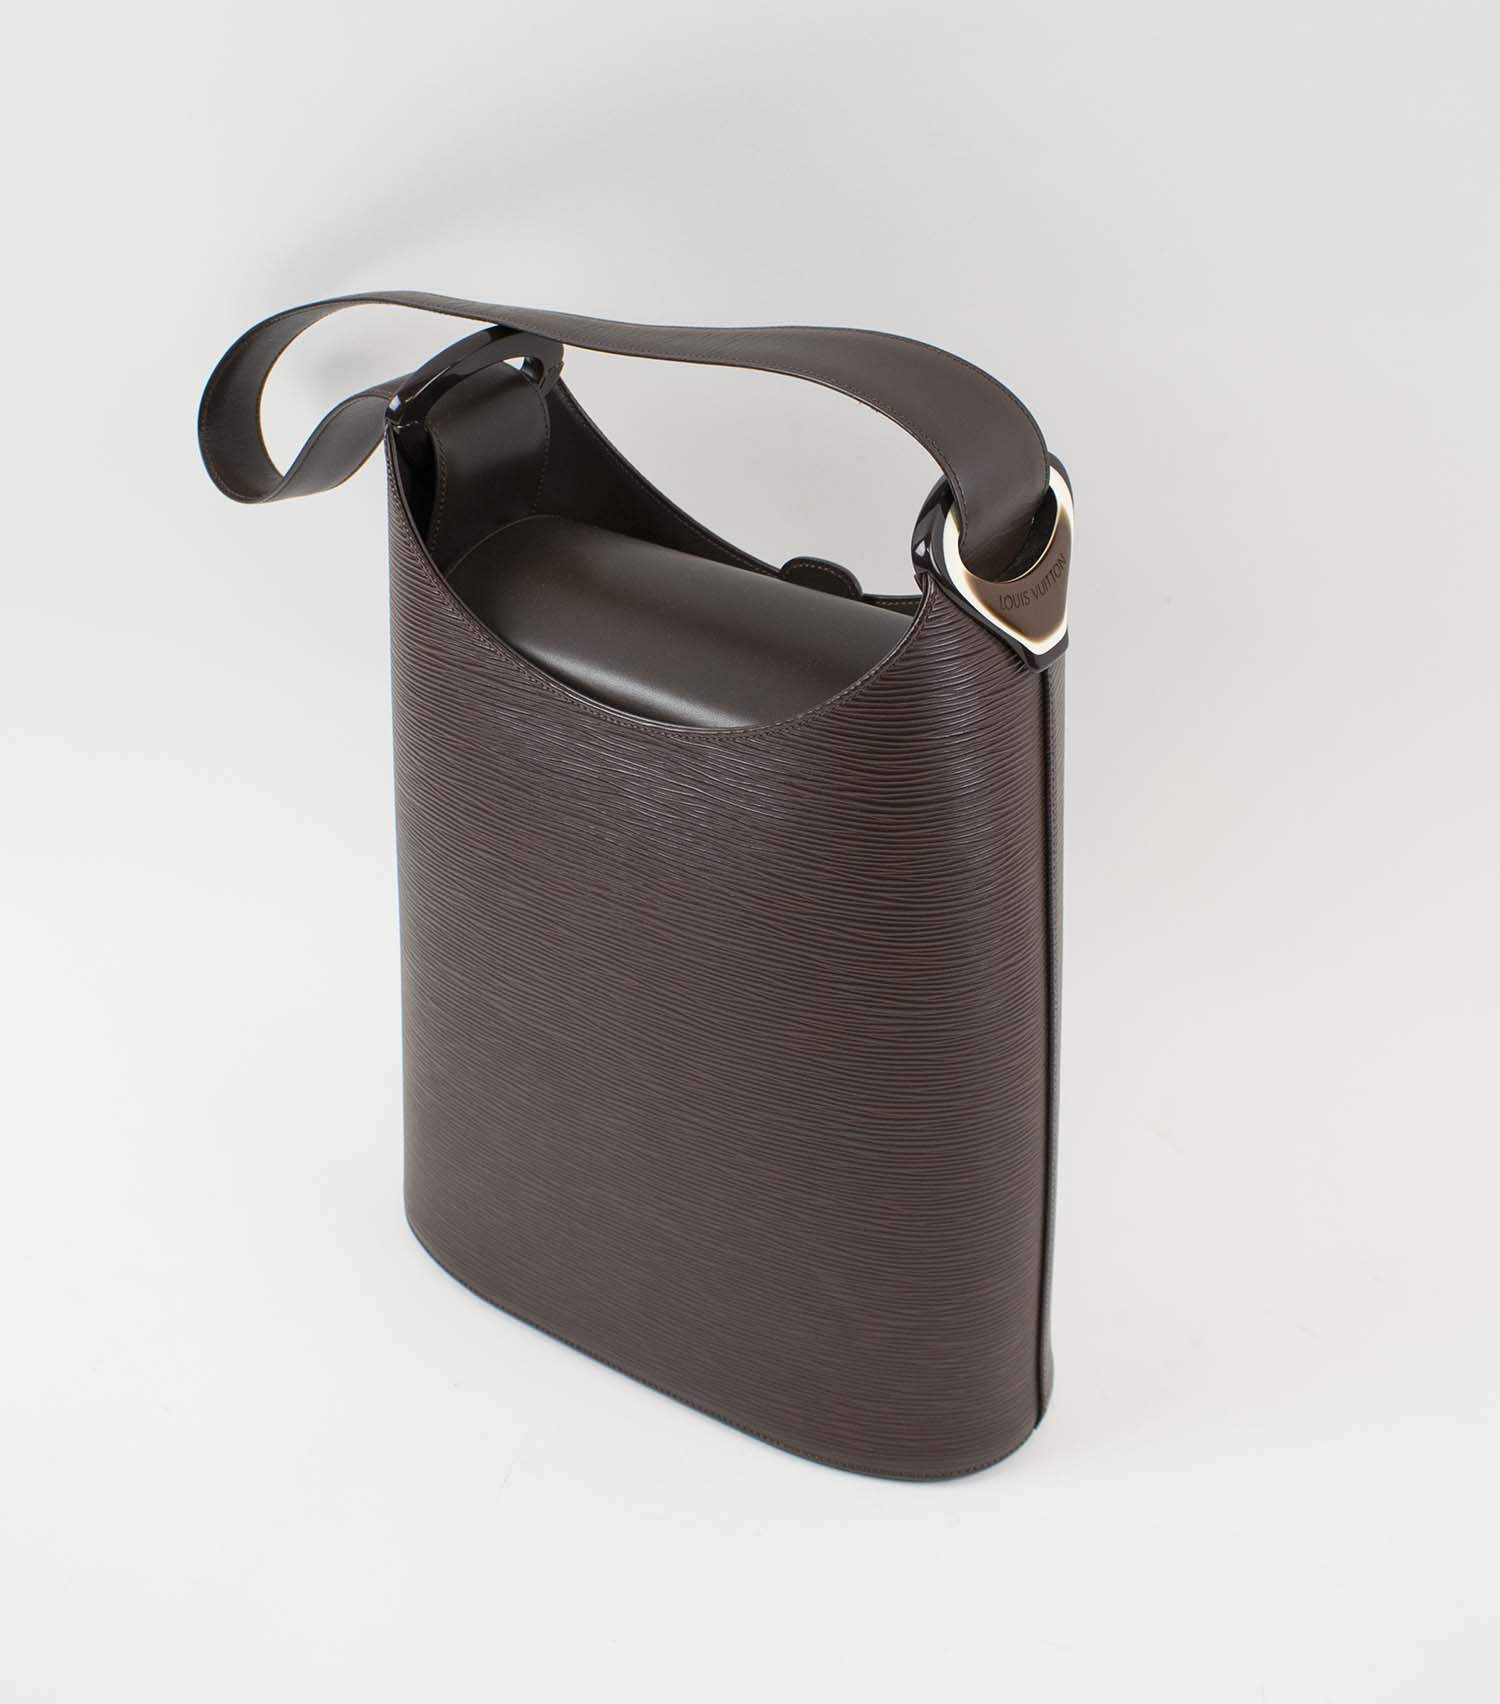 Louis Vuitton Black Epi Leather VERSEAU Bucket Bag